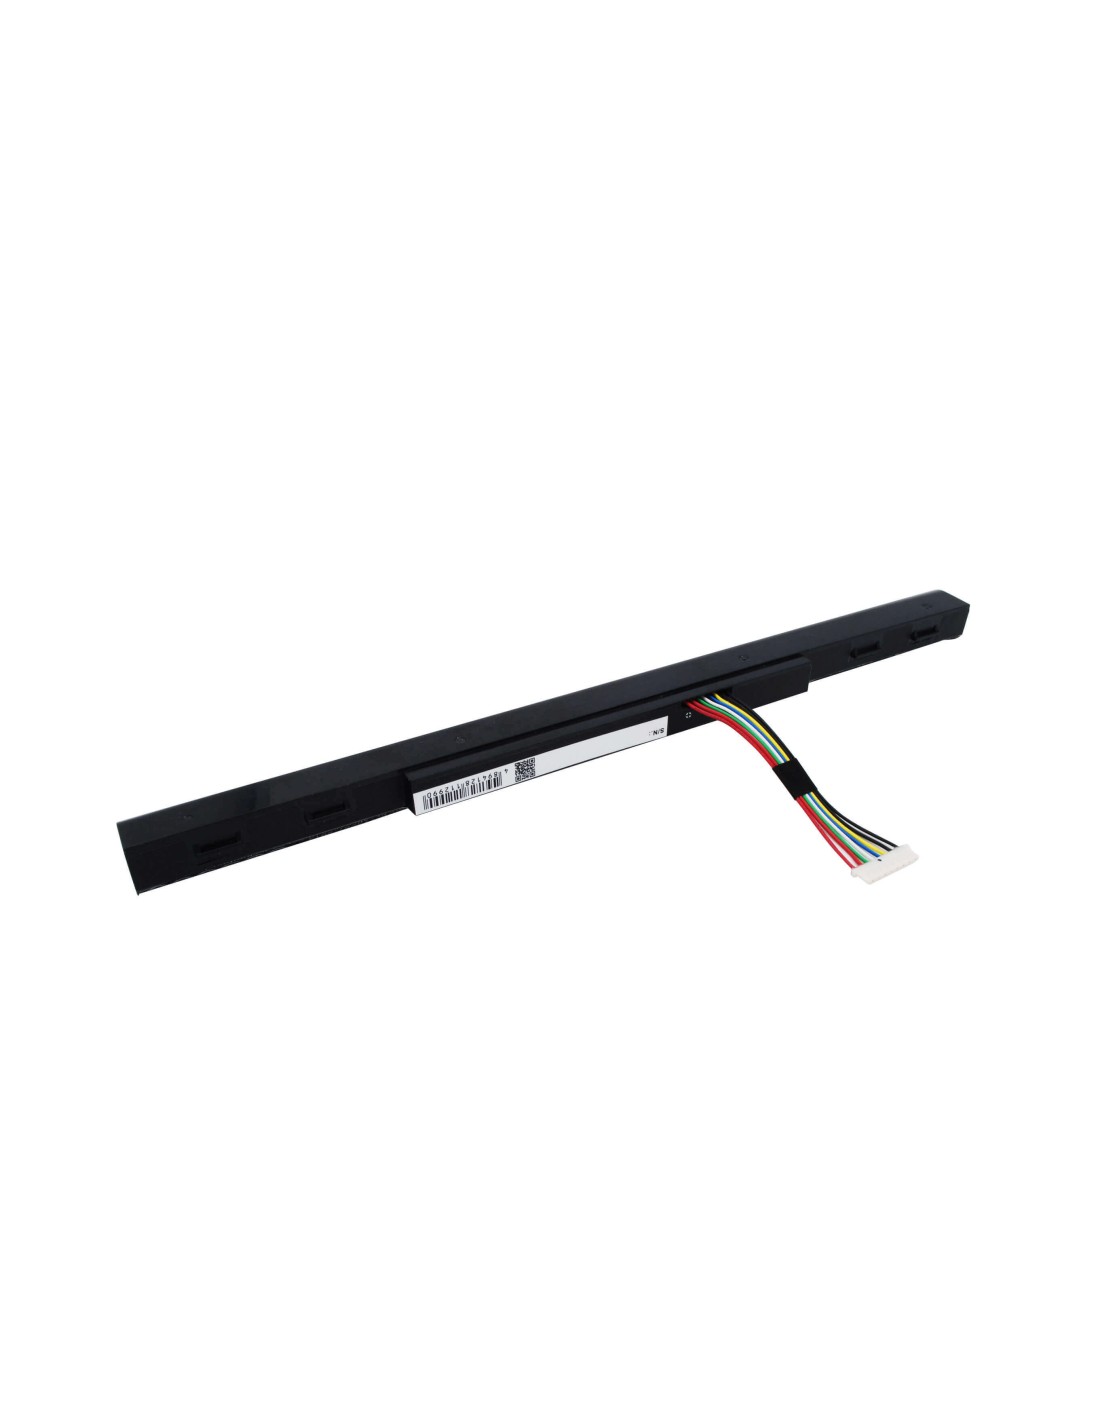 Black Battery for Acer Aspire E5-422, Aspire E5-422g, Aspire E5-472 14.8V, 2200mAh - 32.56Wh